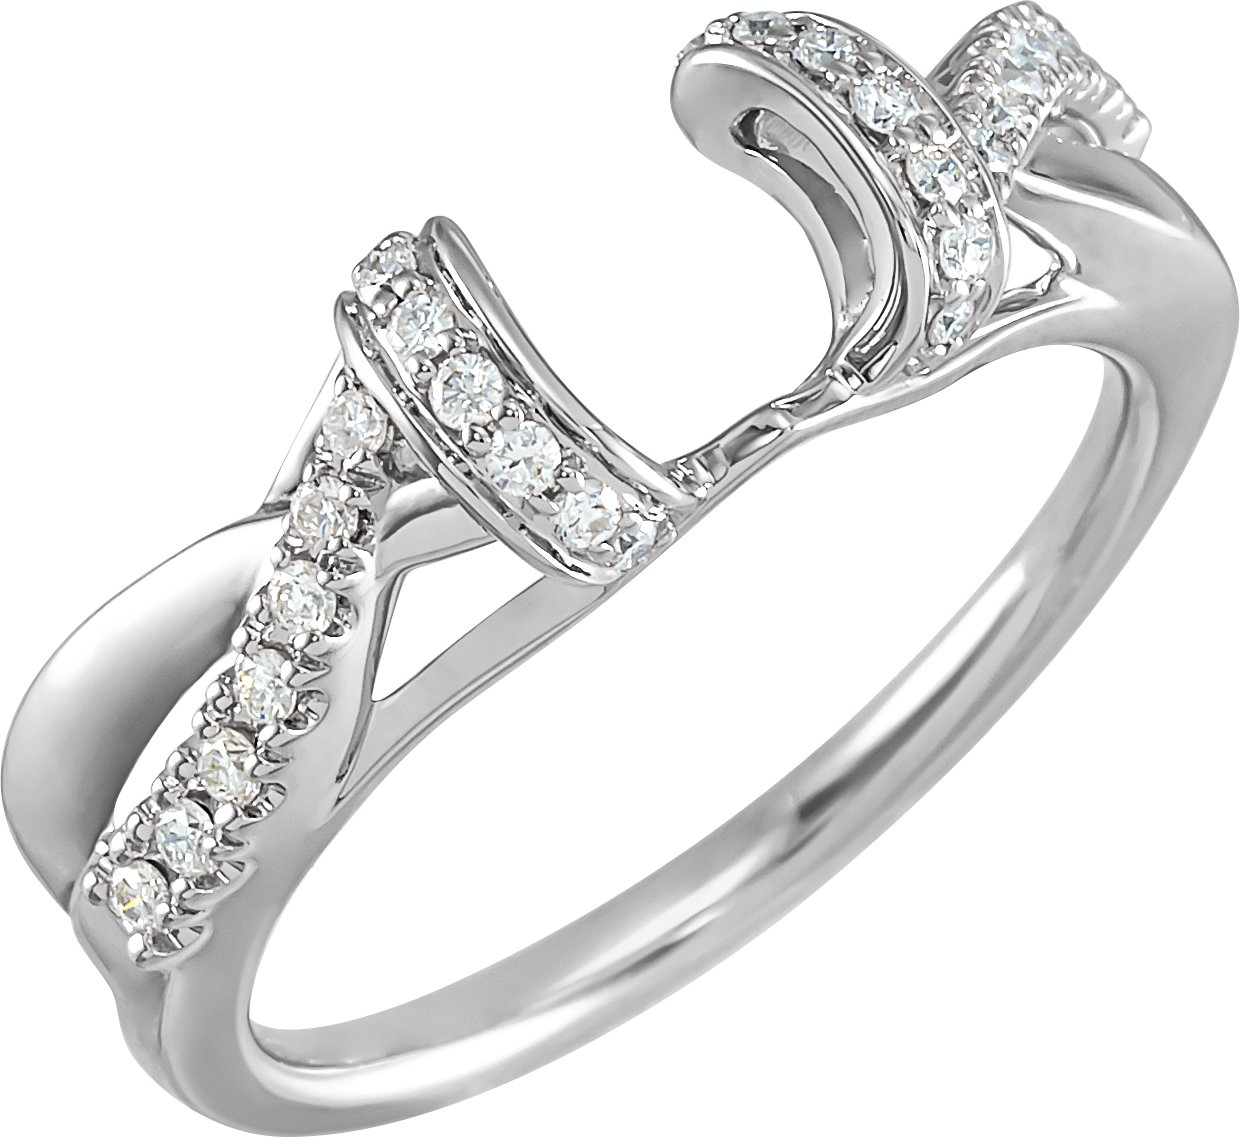 14K White .20 CTW Diamond Enhancer Ring Ref 4979987